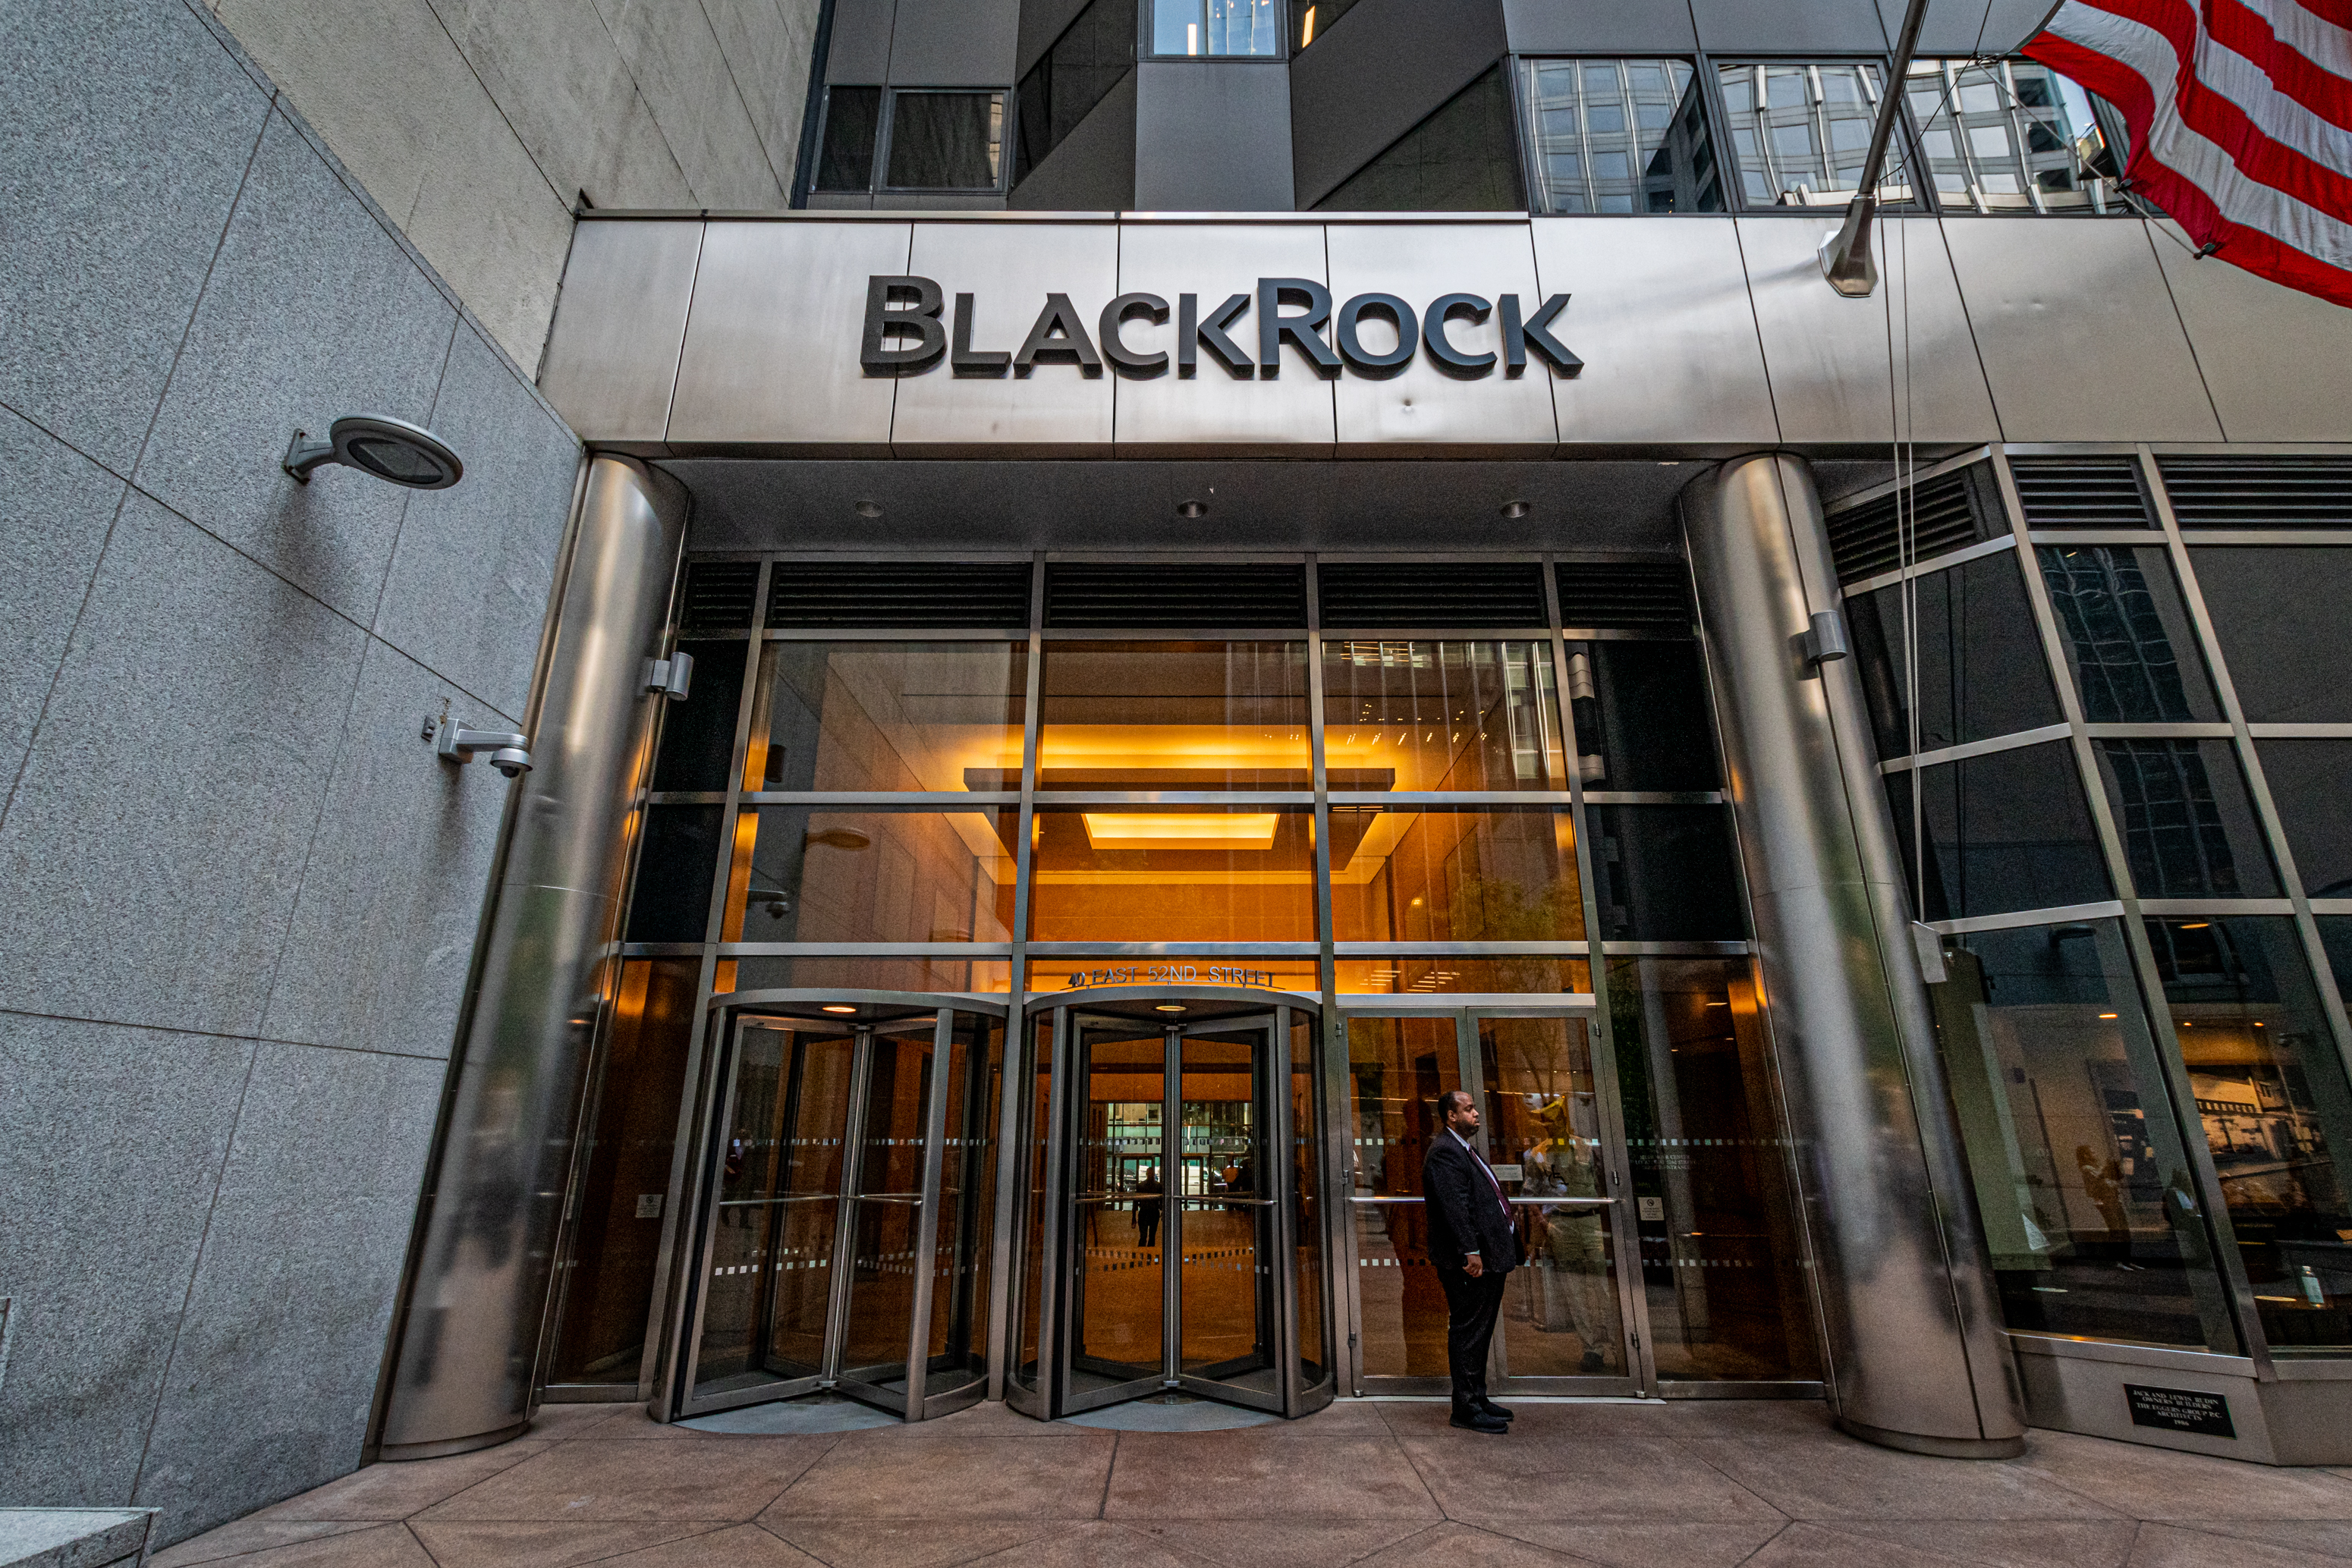  Il gestore patrimoniale BlackRock, insieme a Vanguard e State Street Bank sono tra i principali azionisti della maggior parte delle società americane quotate in borsa (tra cui Nike, Anheuser-Busch e Kate Spade) e grandi sostenitori di iniziative ESG come la CEI.